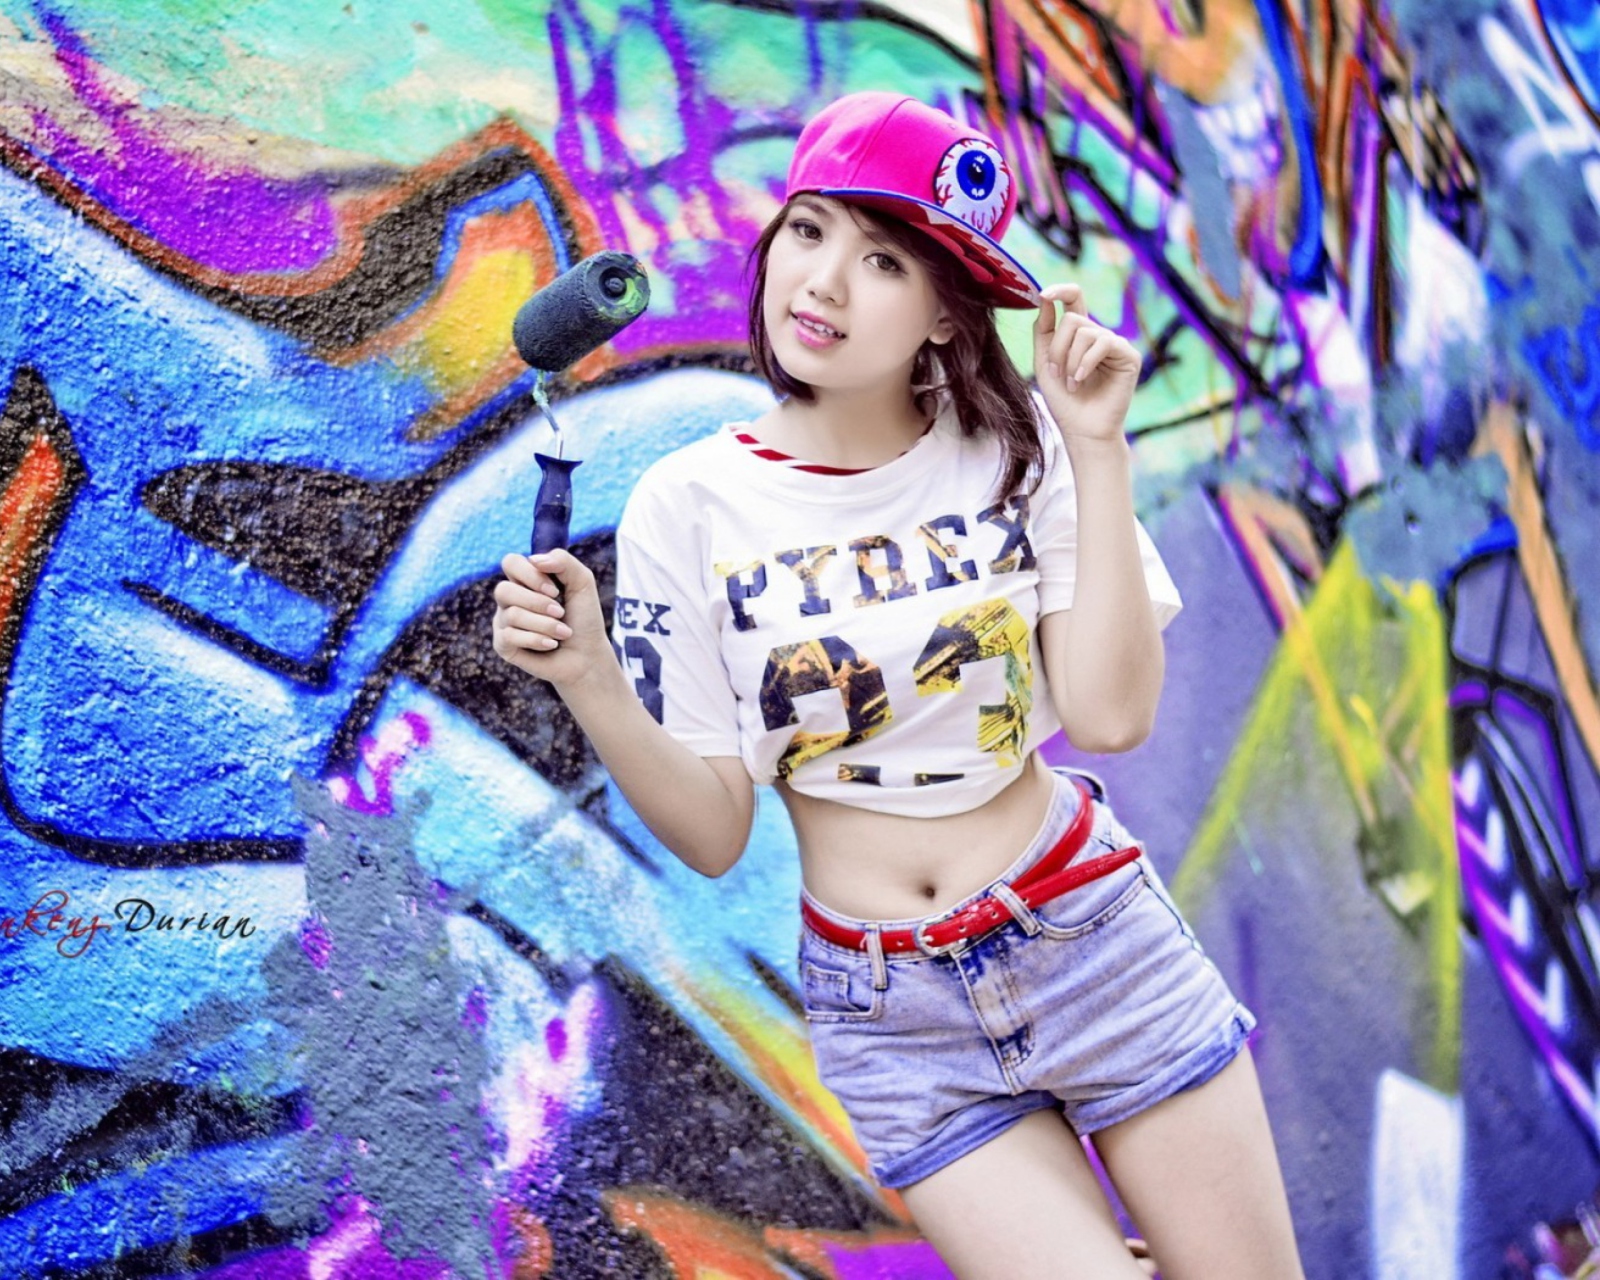 Cute Asian Graffiti Artist Girl screenshot #1 1600x1280